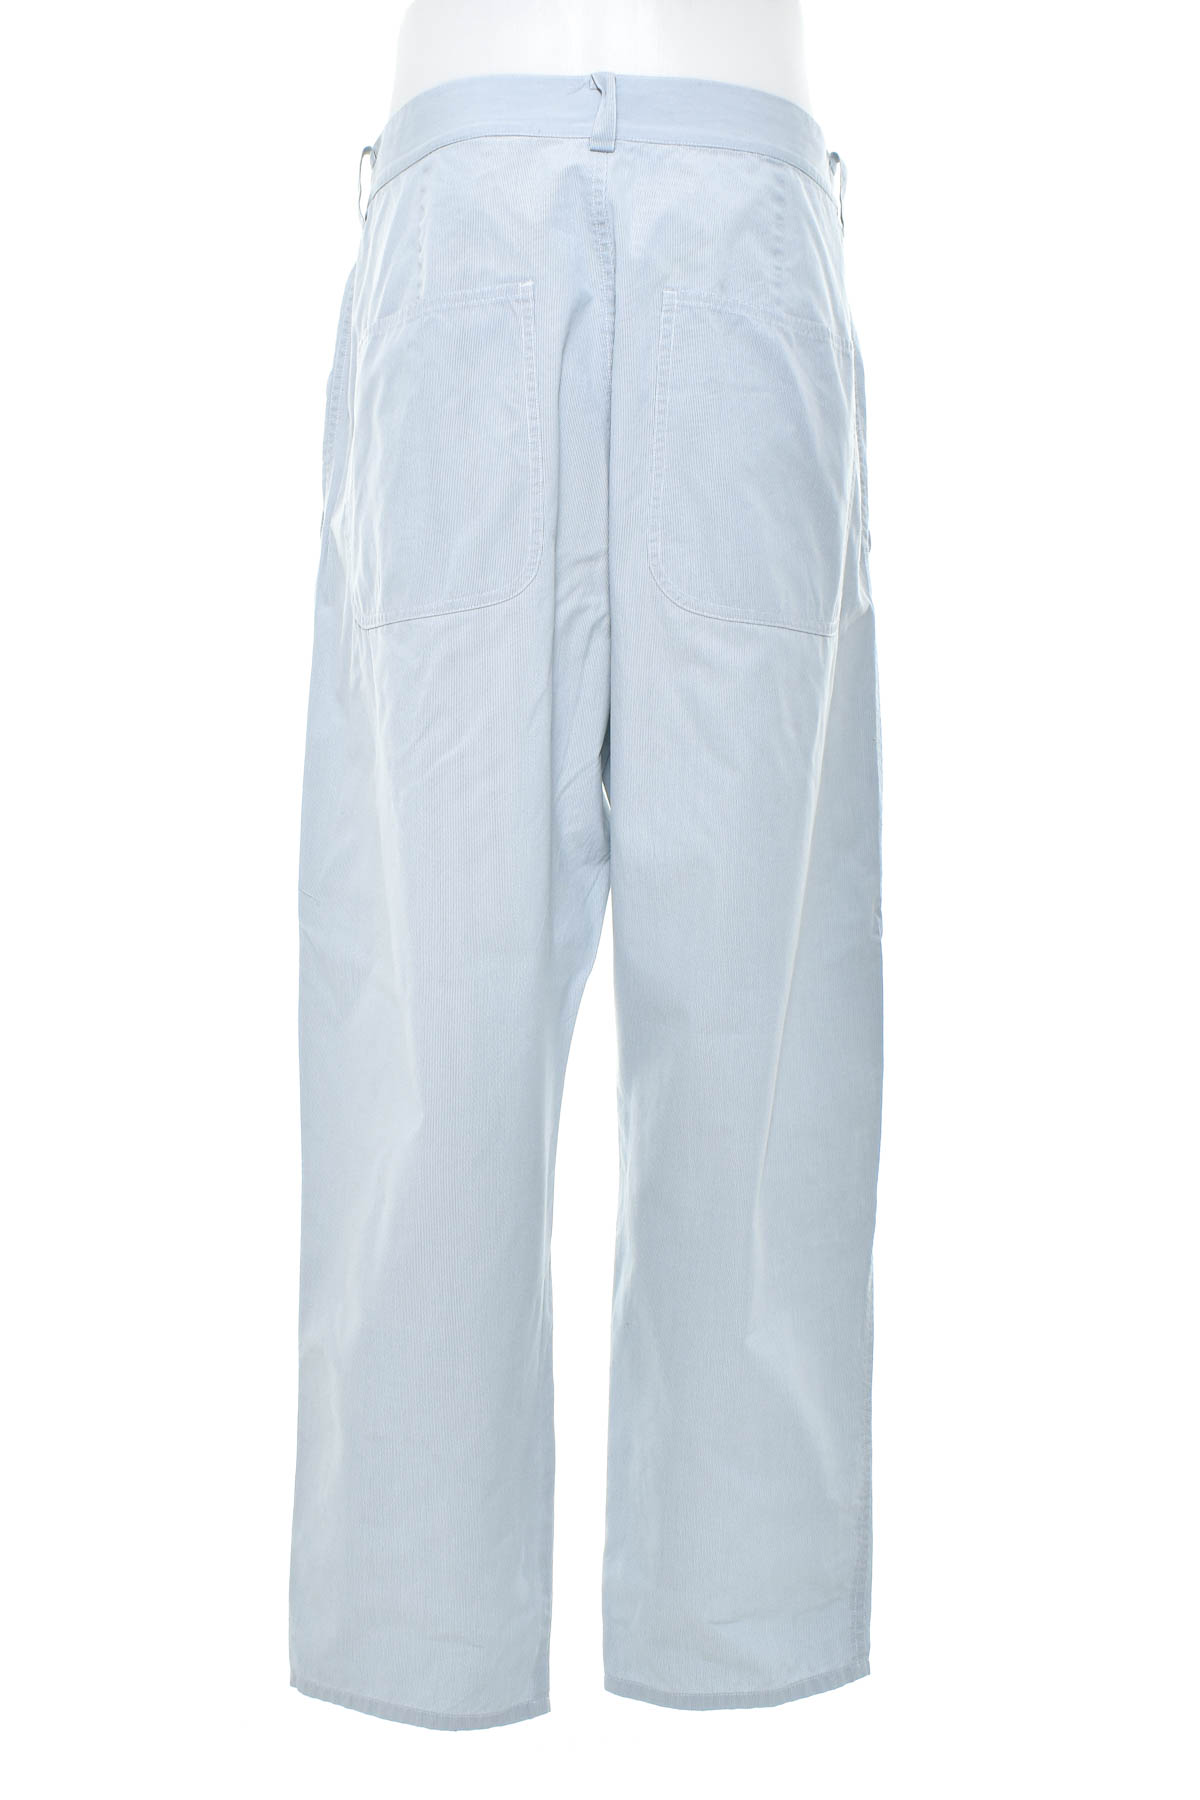 Pantalon pentru bărbați - COS - 1